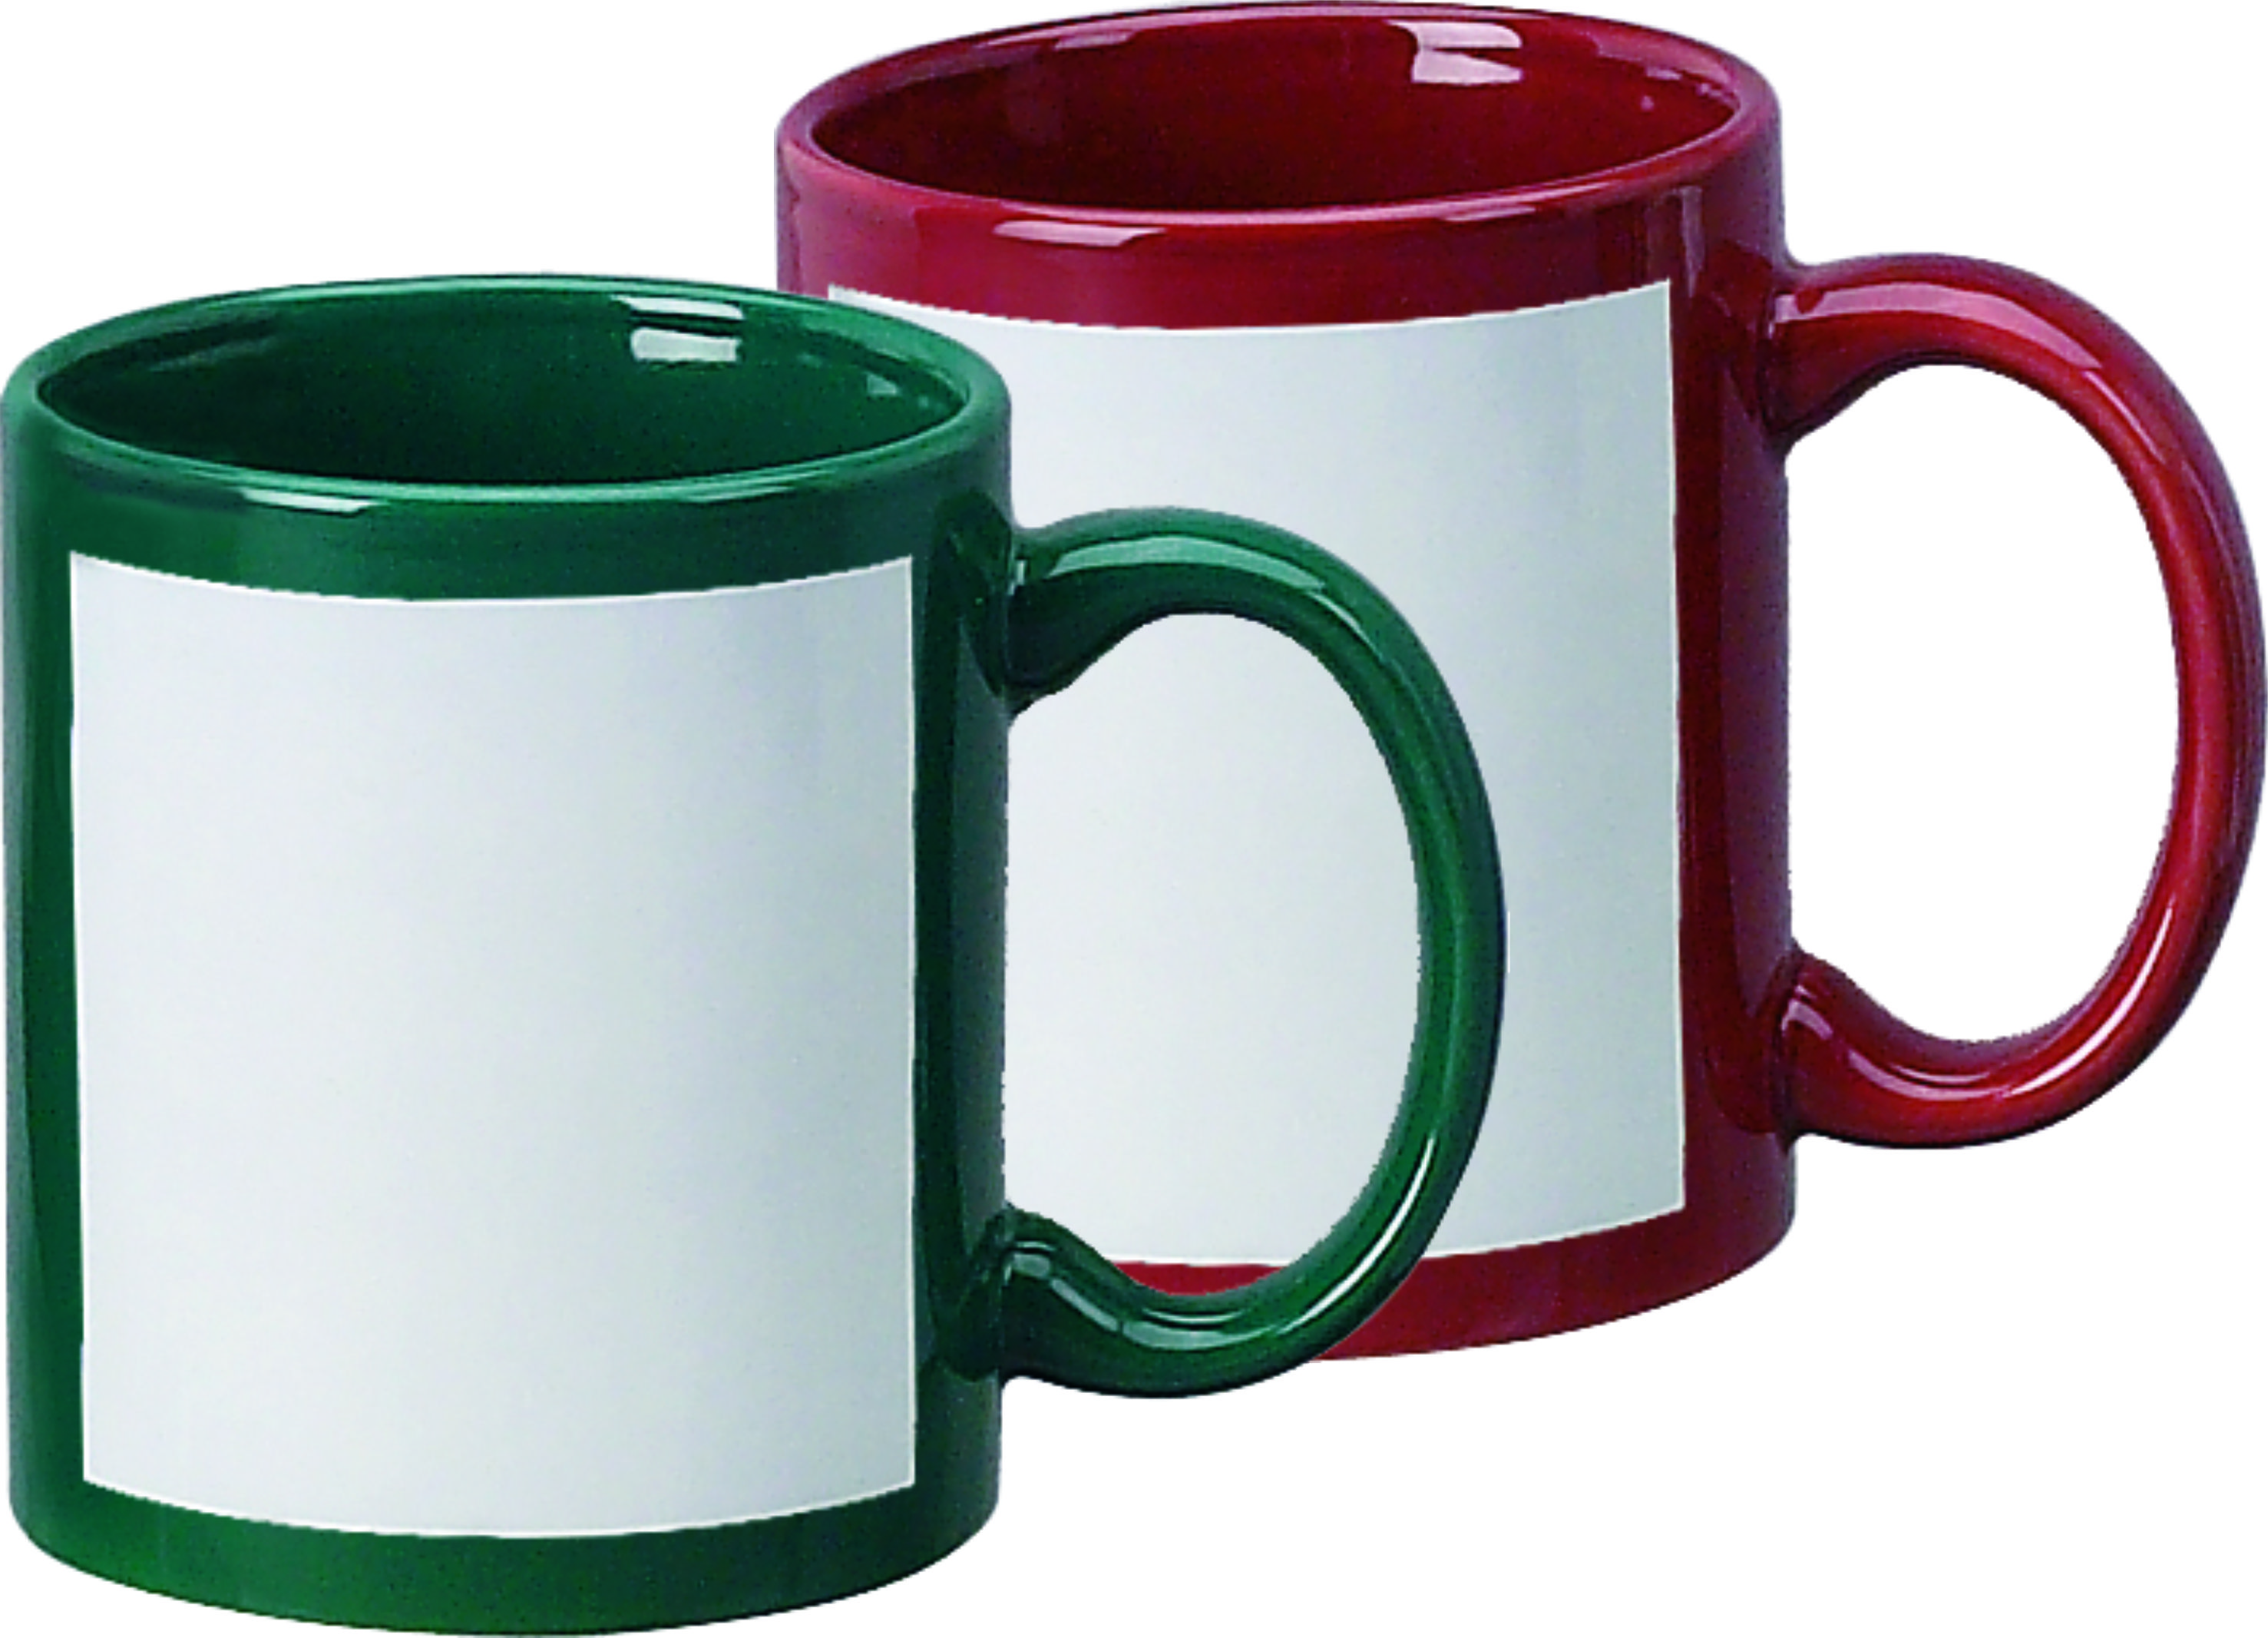 Sublimation Mug 11oz Color Mug with White Patch, sublimation